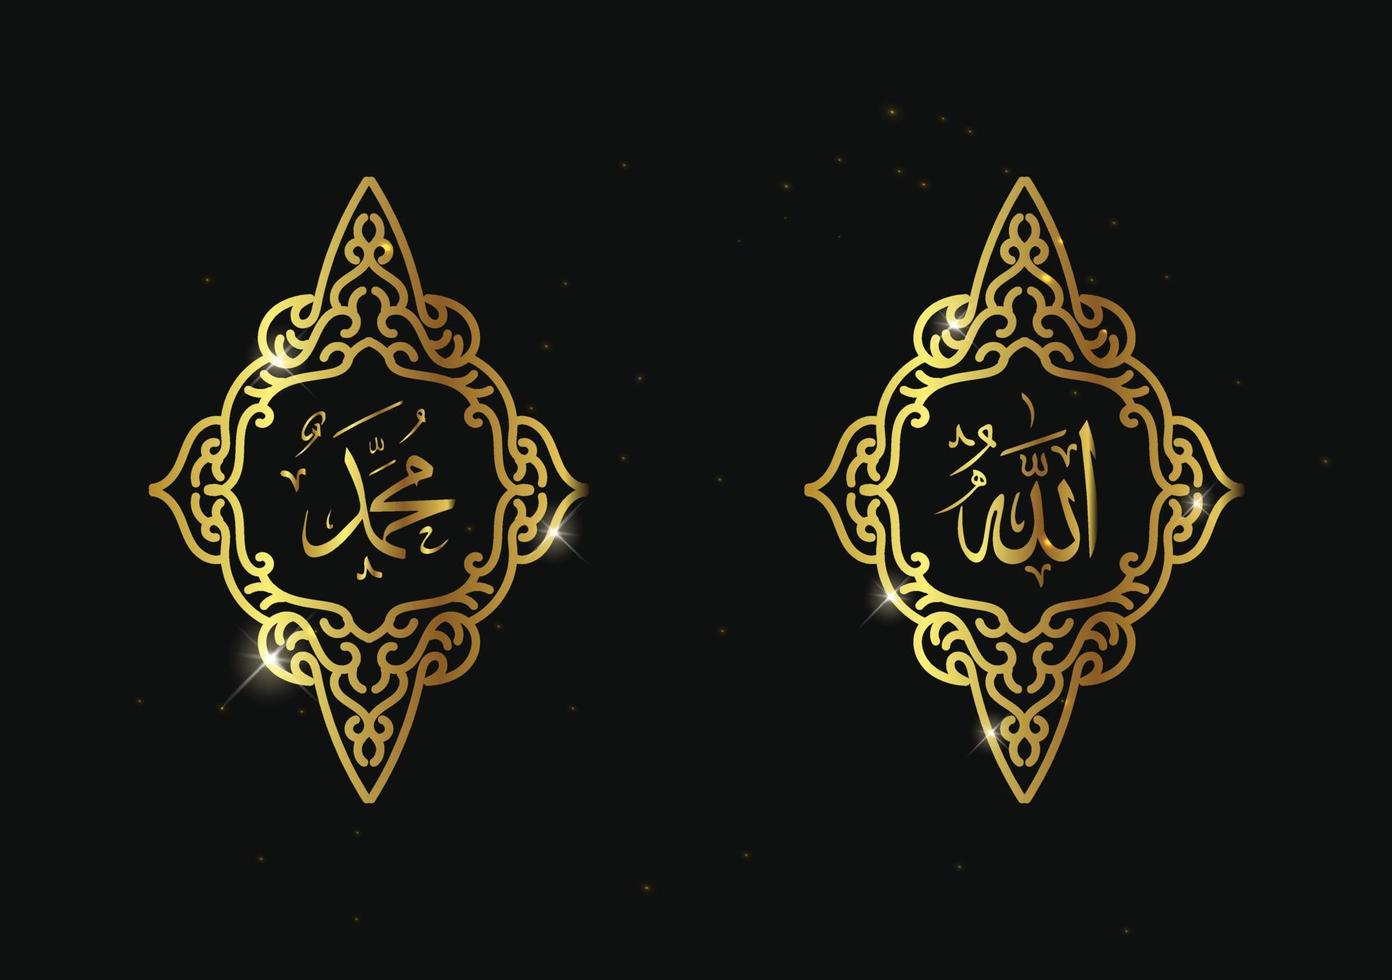 caligrafia árabe gratuita de allah muhammad com moldura retrô ou moldura vintage e cor dourada vetor